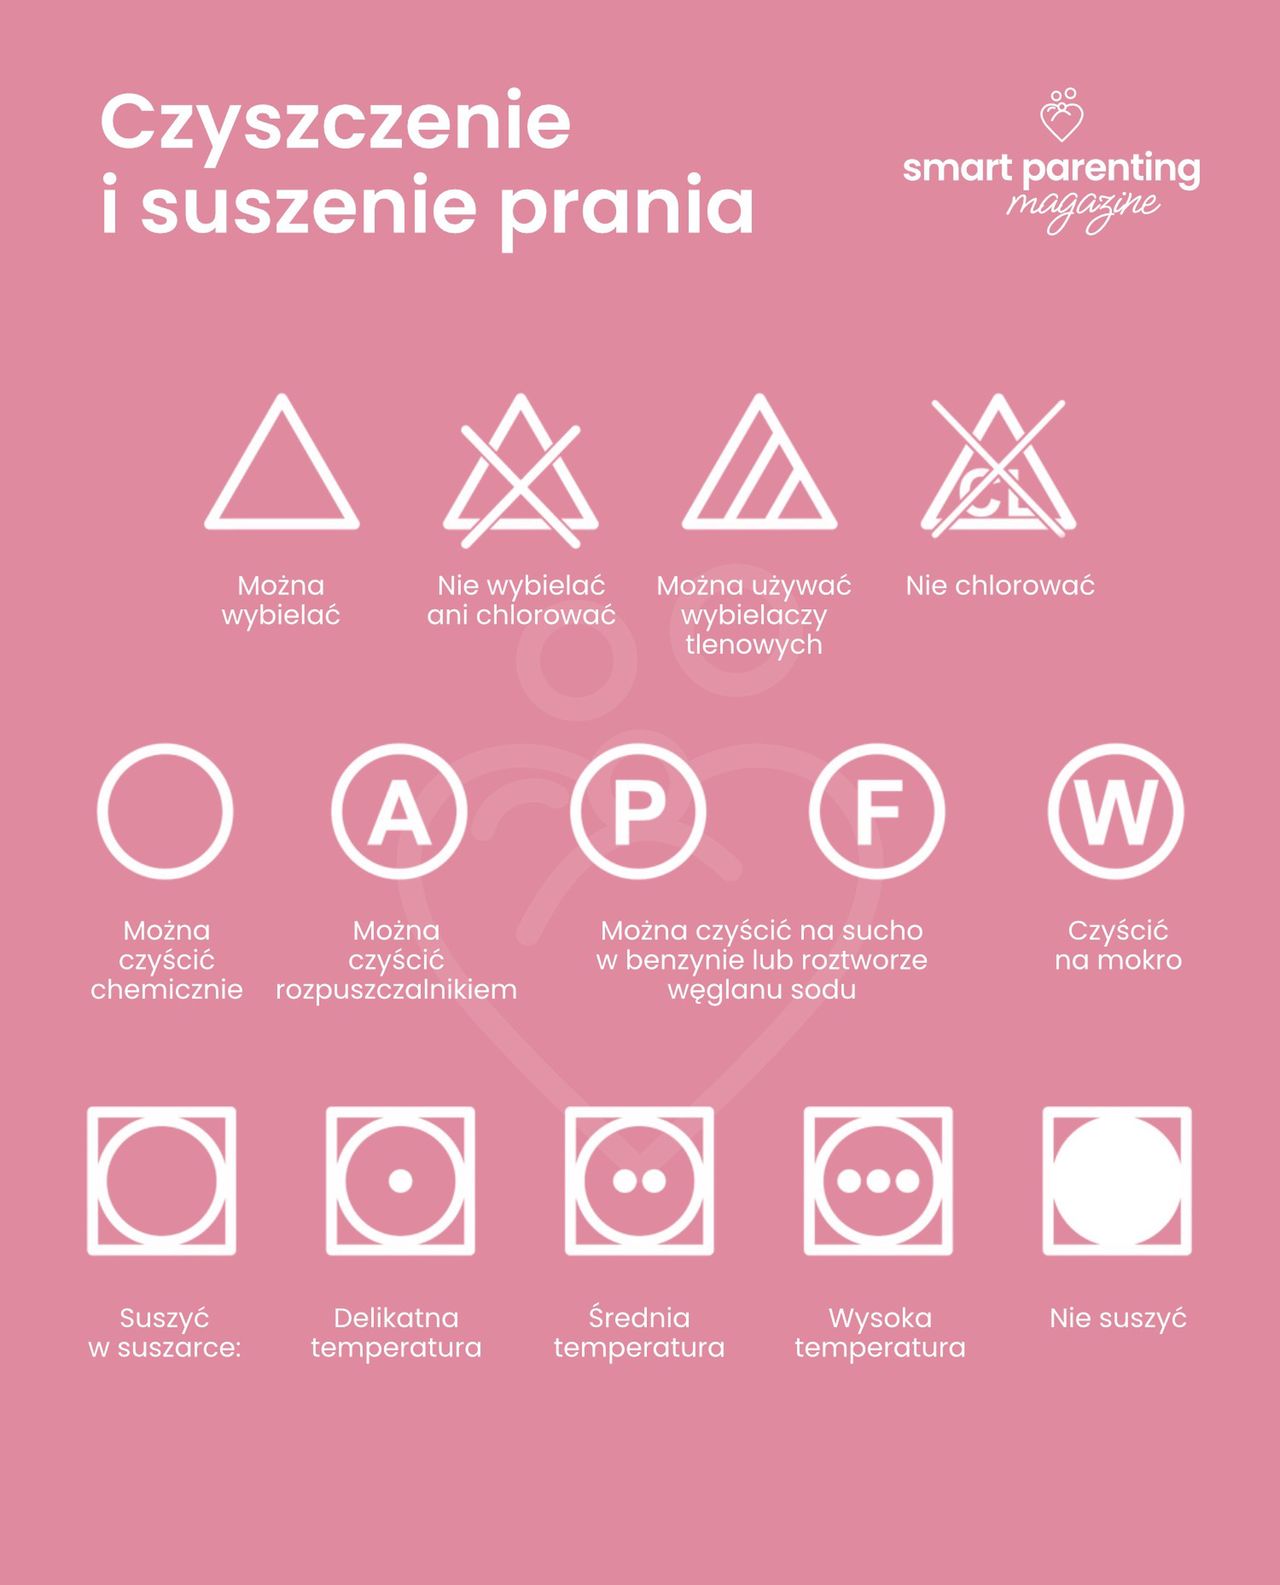 Symbole na metkach - trójkąty, koła i kwadraty